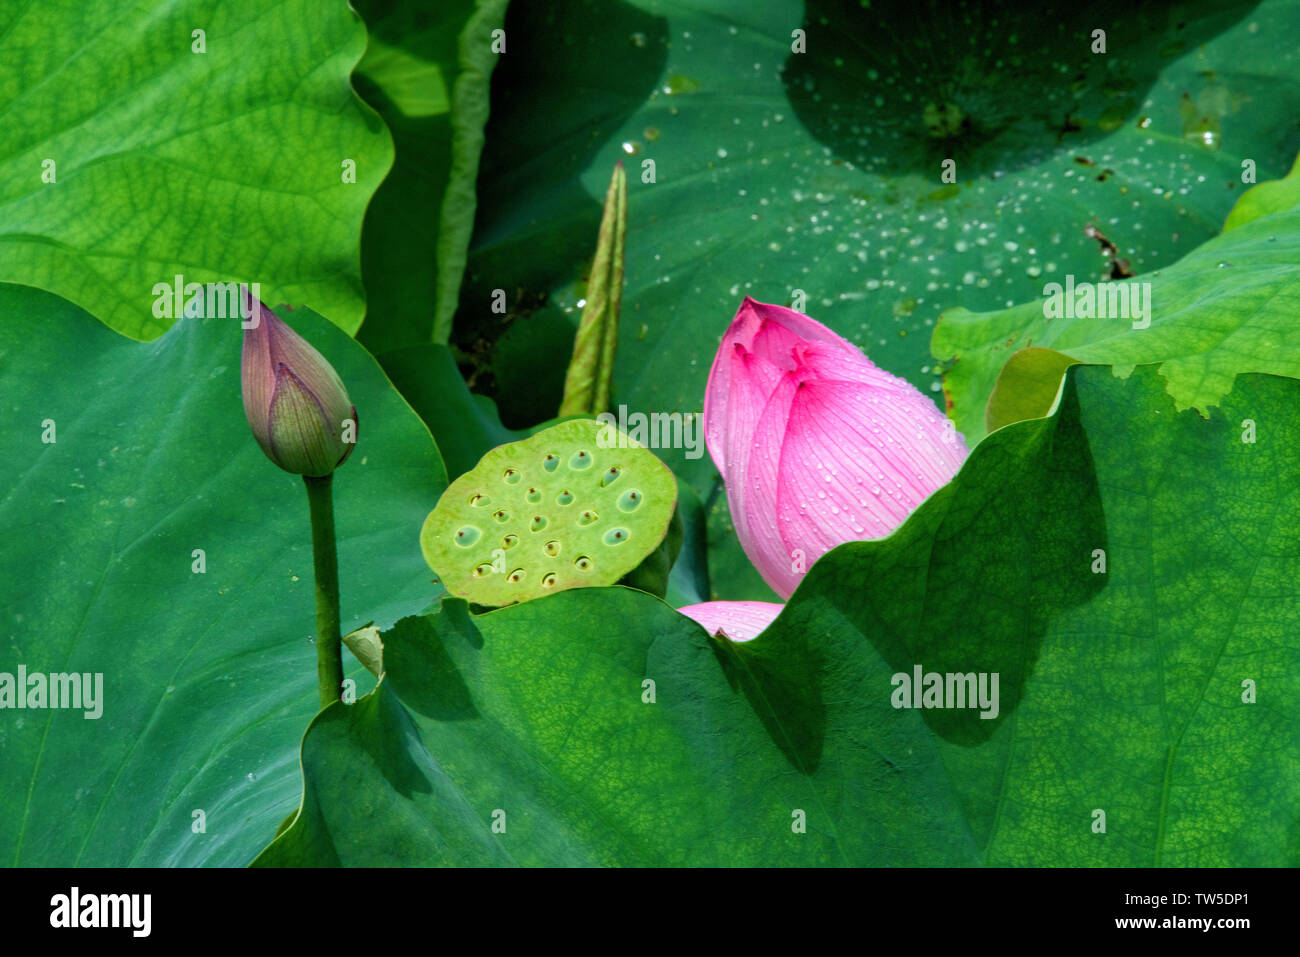 Bund et la racine de lotus, Province du Hunan, Chine Banque D'Images